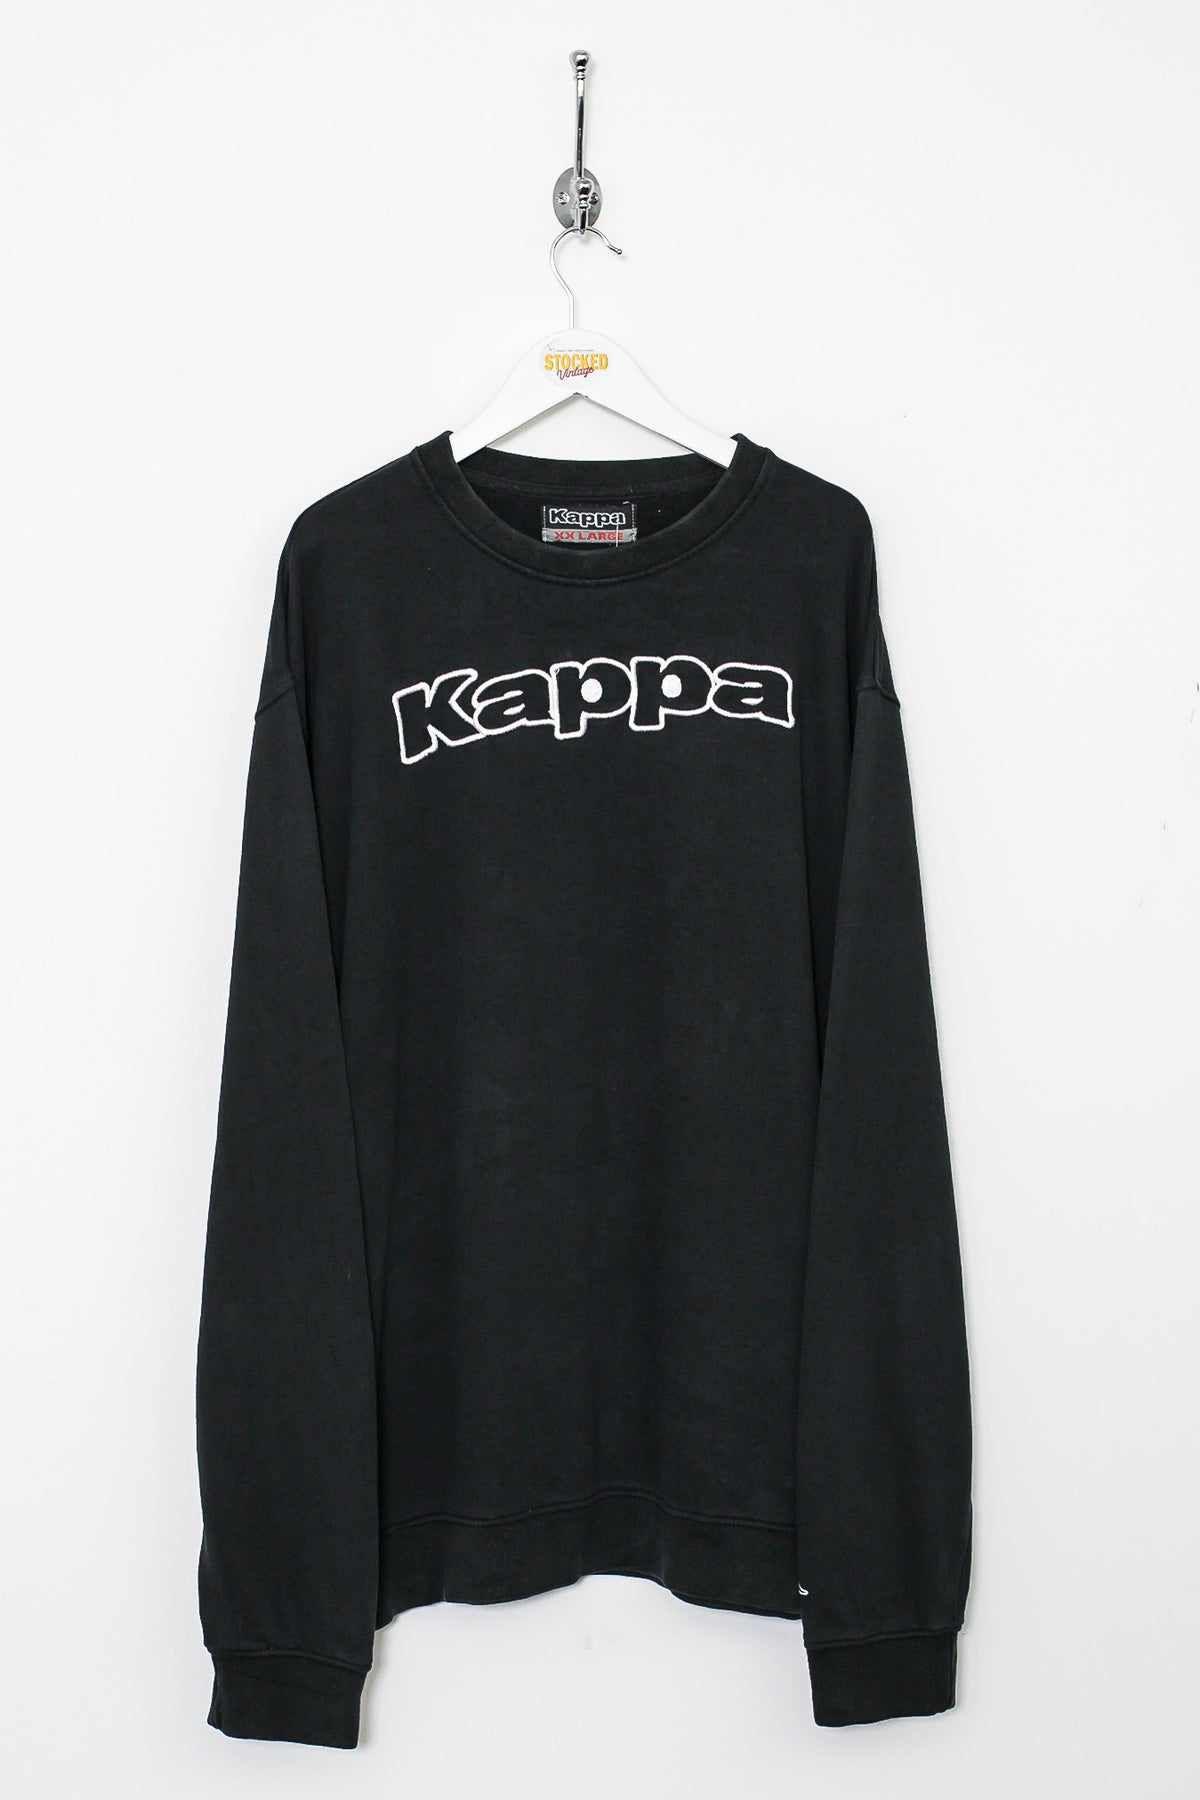 00s Kappa Sweatshirt (XXL)